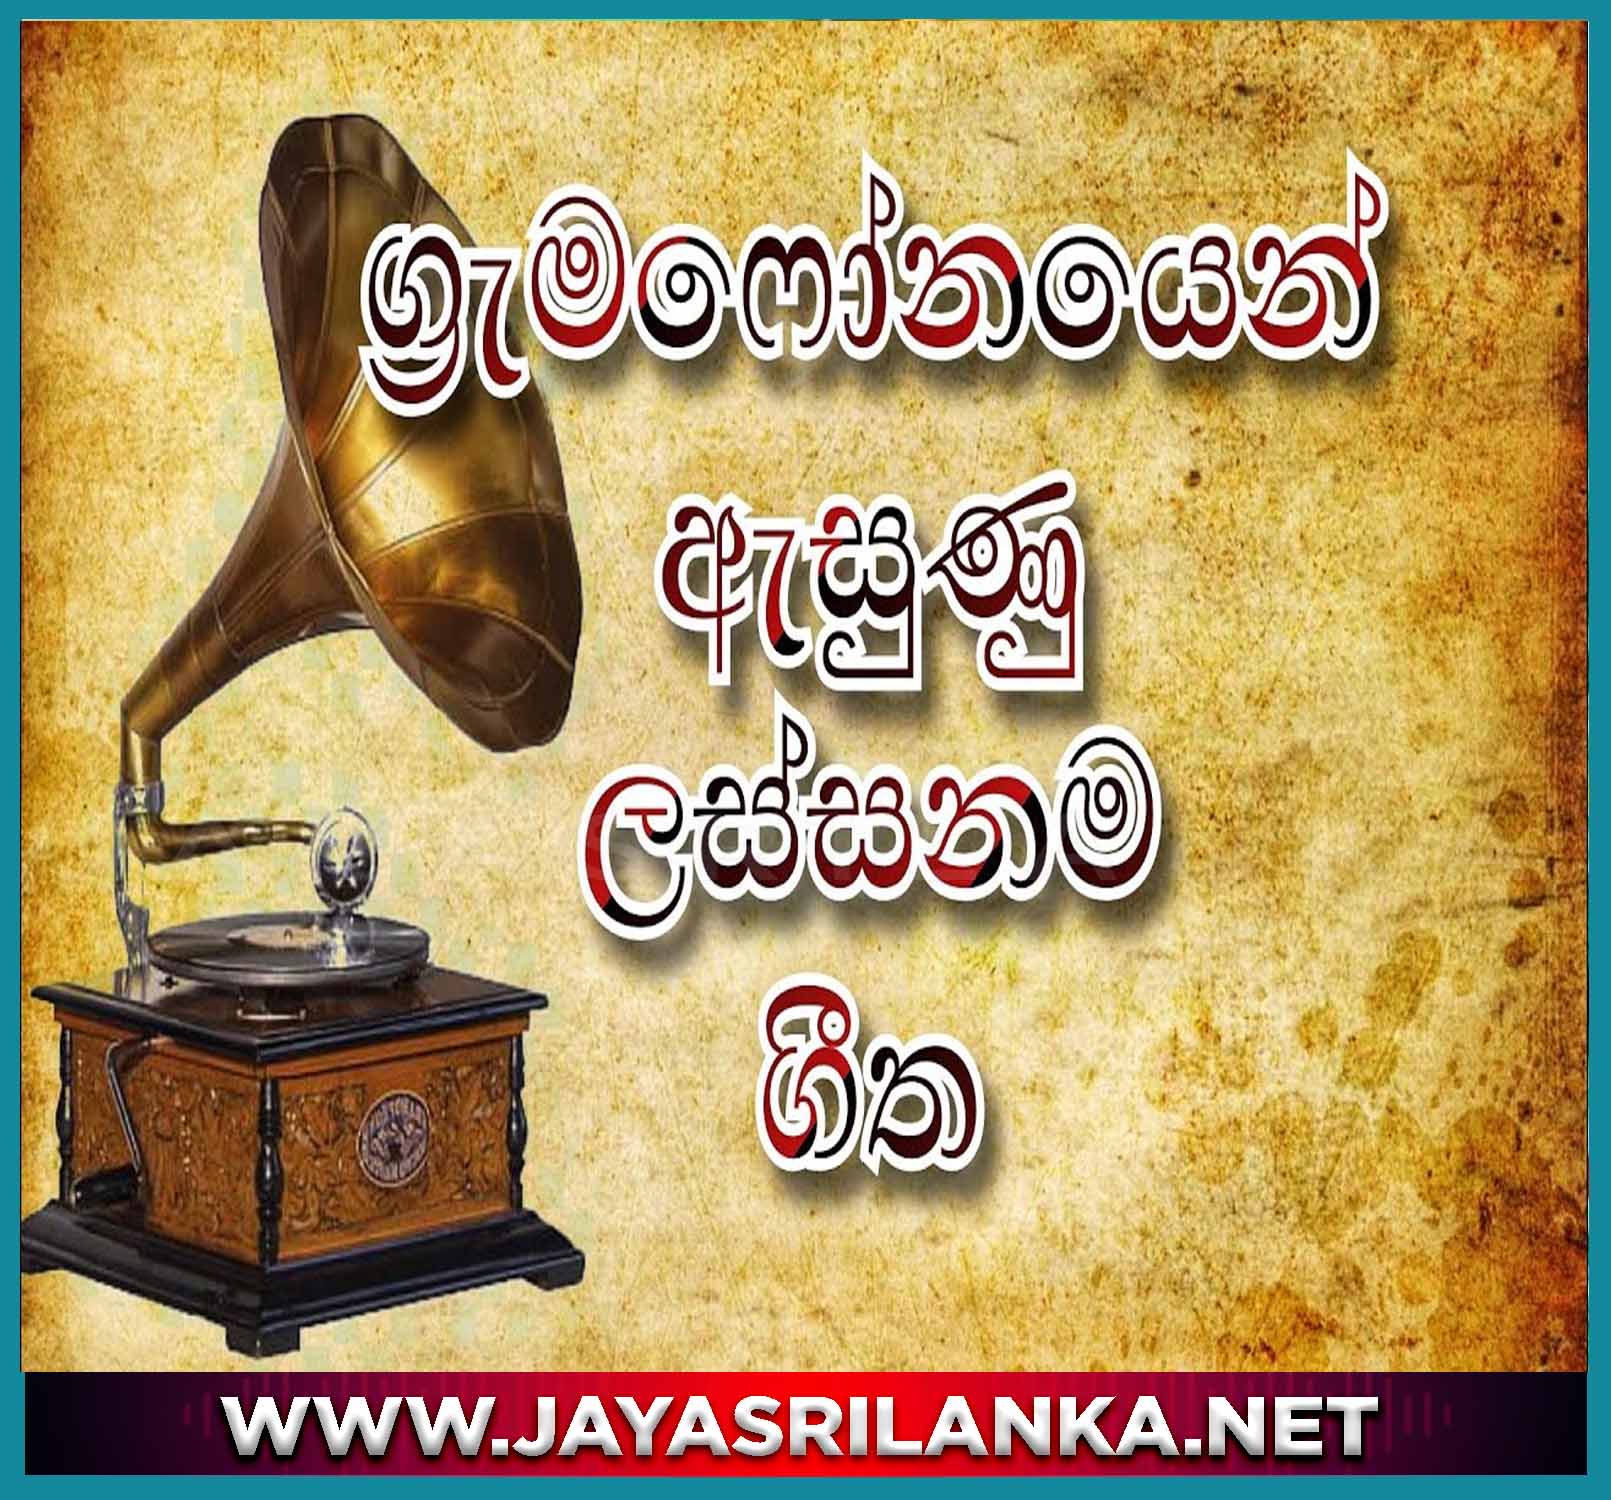 Adare Ai Podi Handa Mame - Gramophone Songs mp3 Image